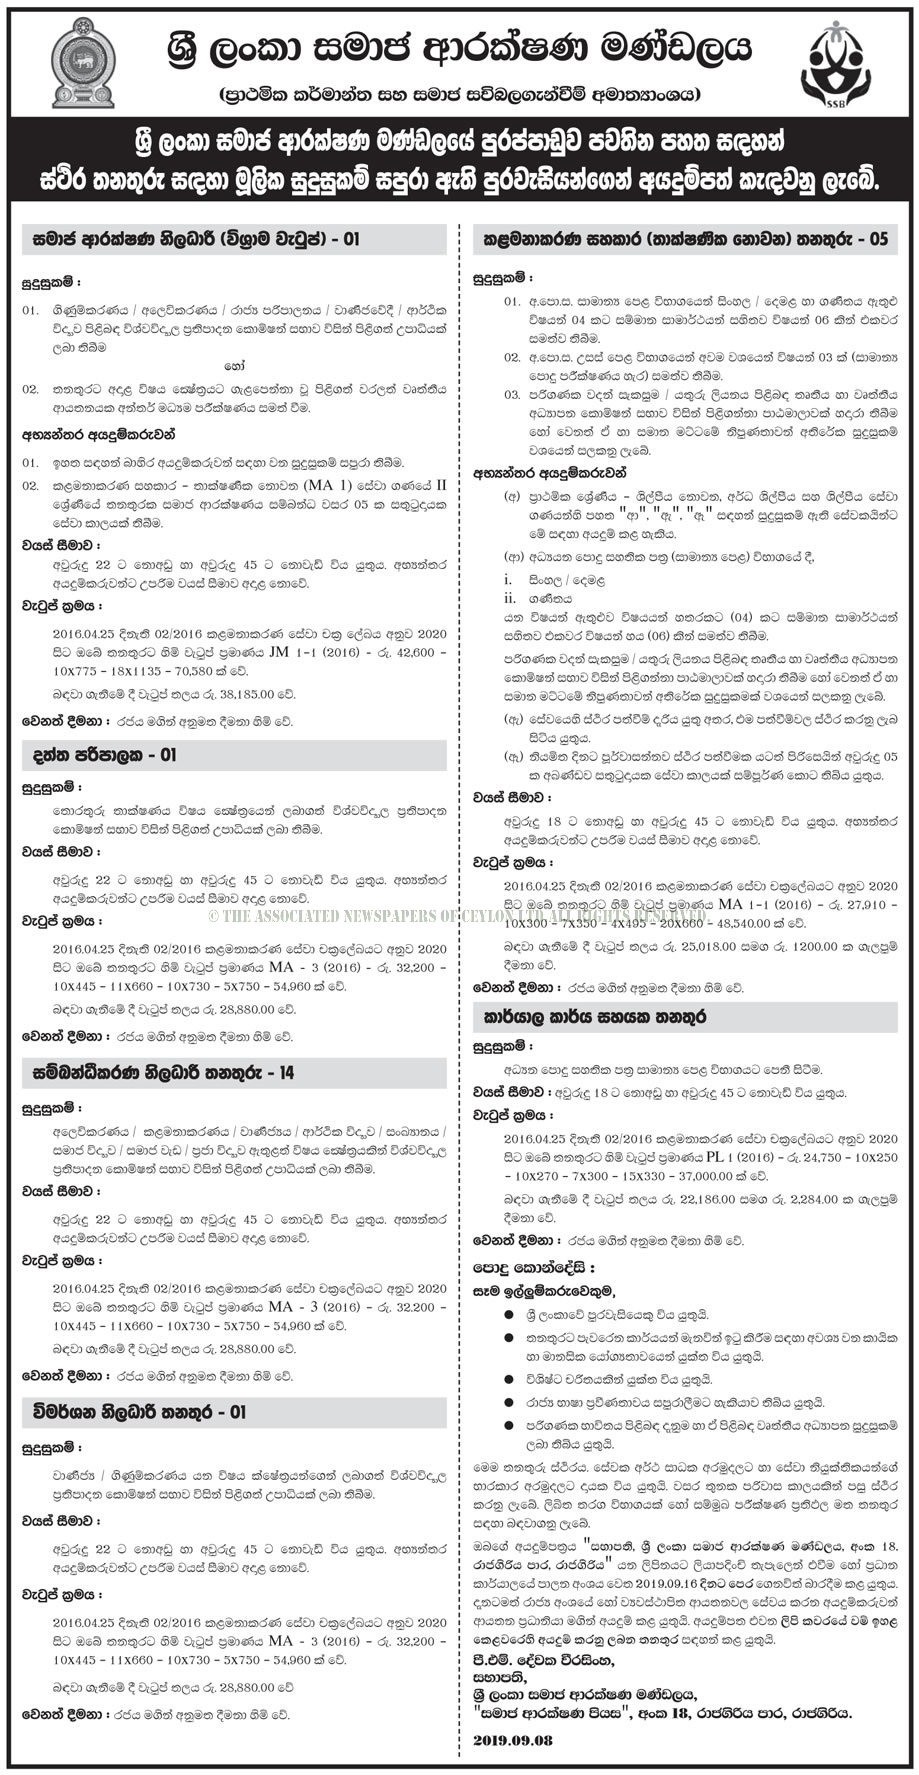  Sri Lanka Social Security Board Job Vacancies 